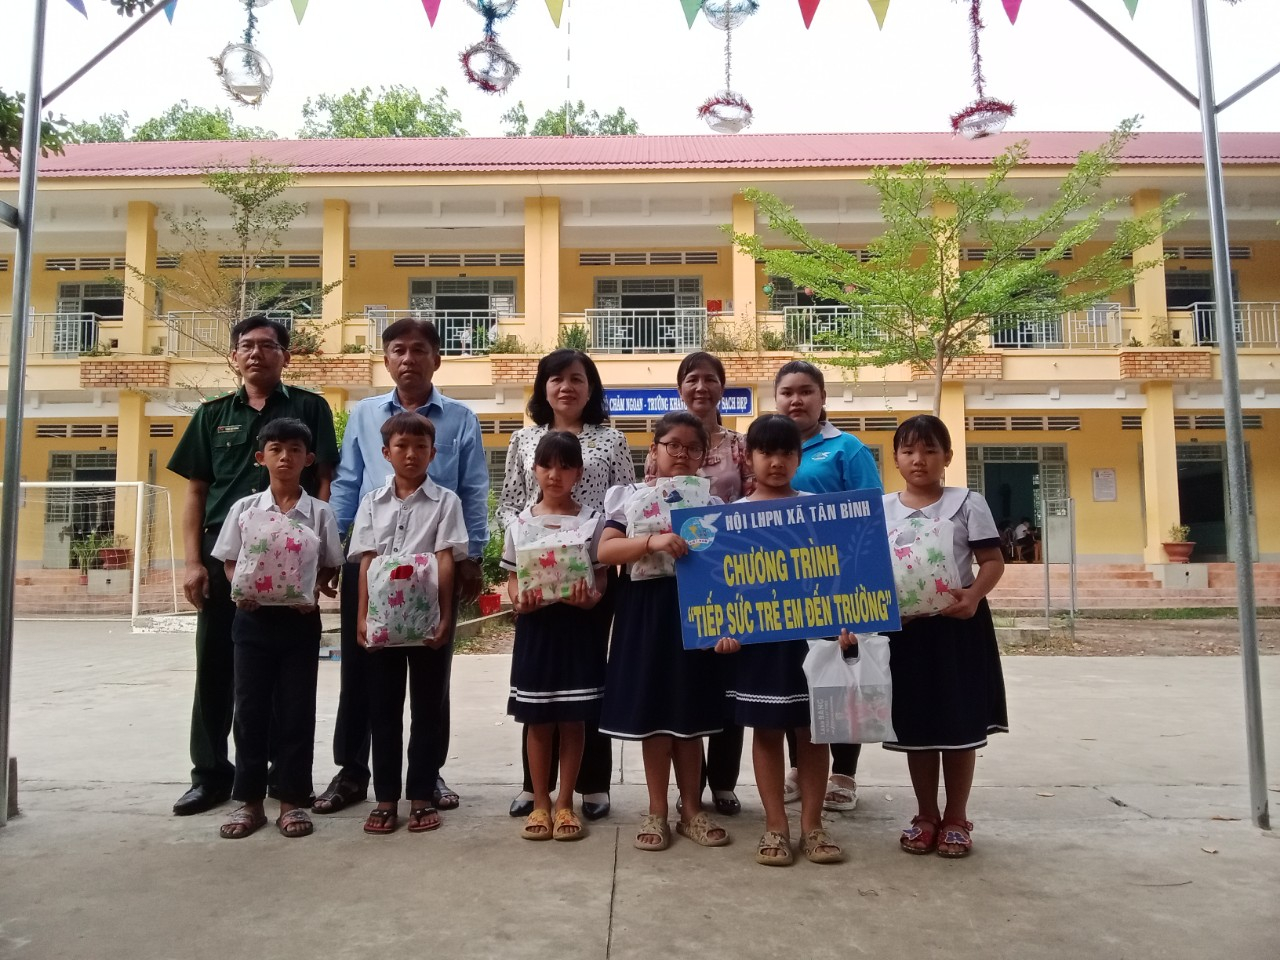 Hội LHPN xã Tân Bình thực hiện chương trình  tiếp sức trẻ đến trường